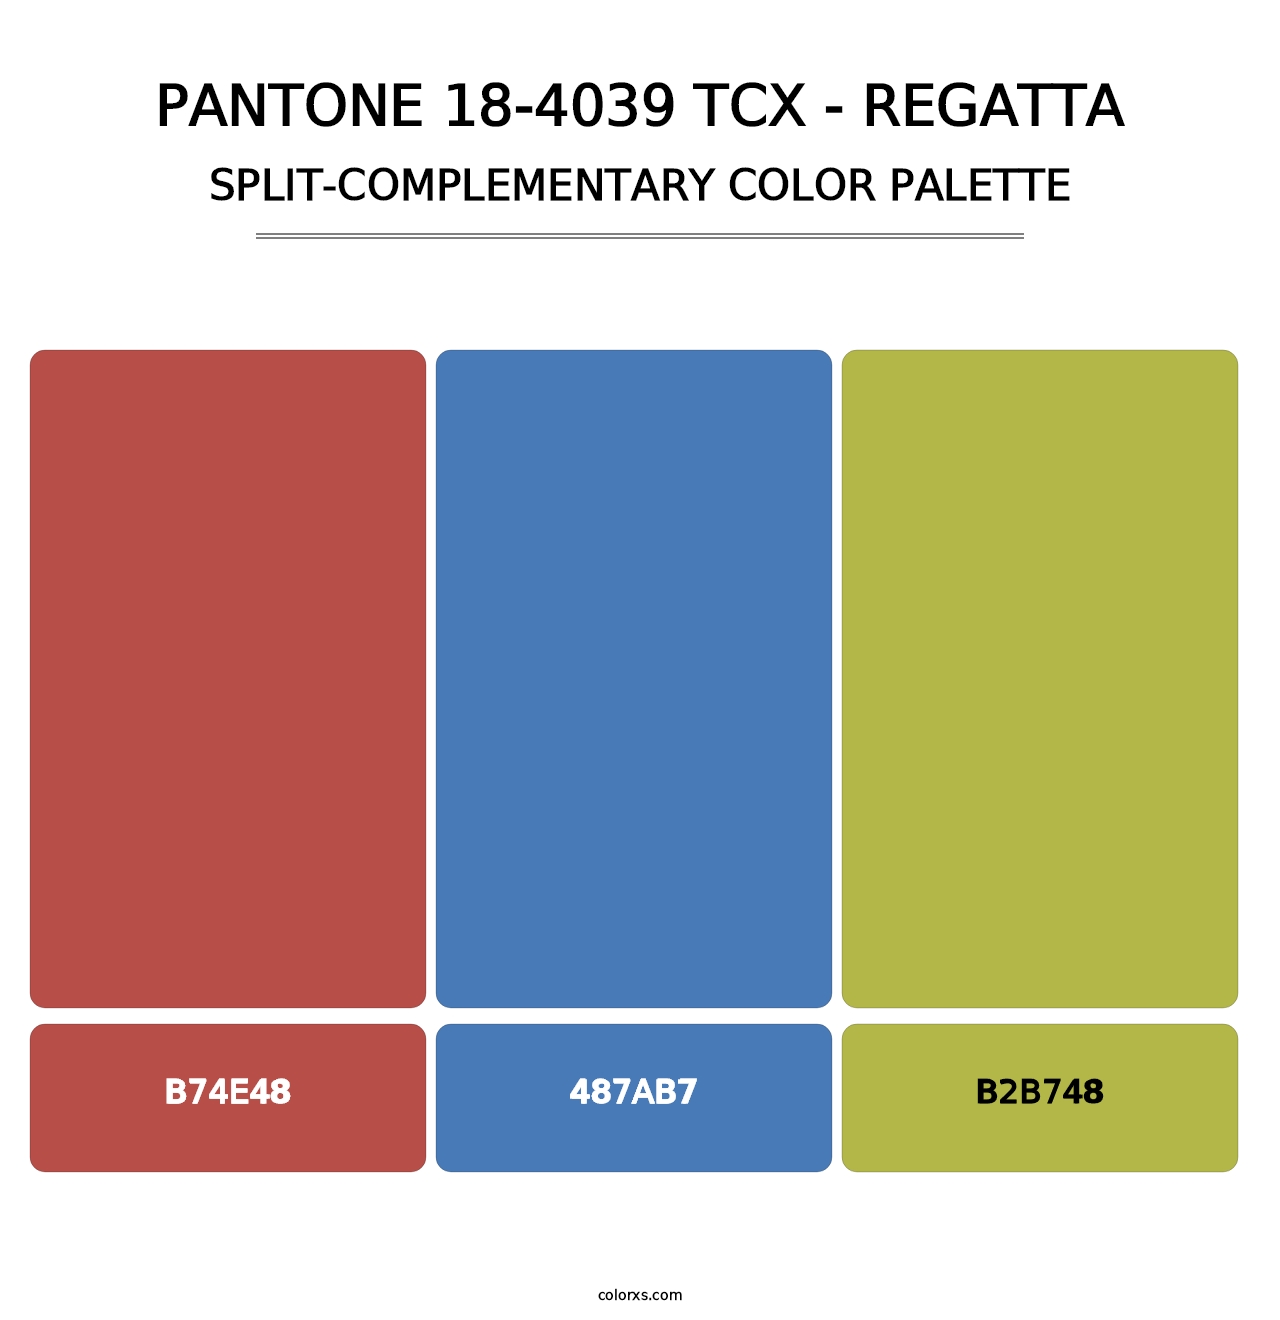 PANTONE 18-4039 TCX - Regatta - Split-Complementary Color Palette